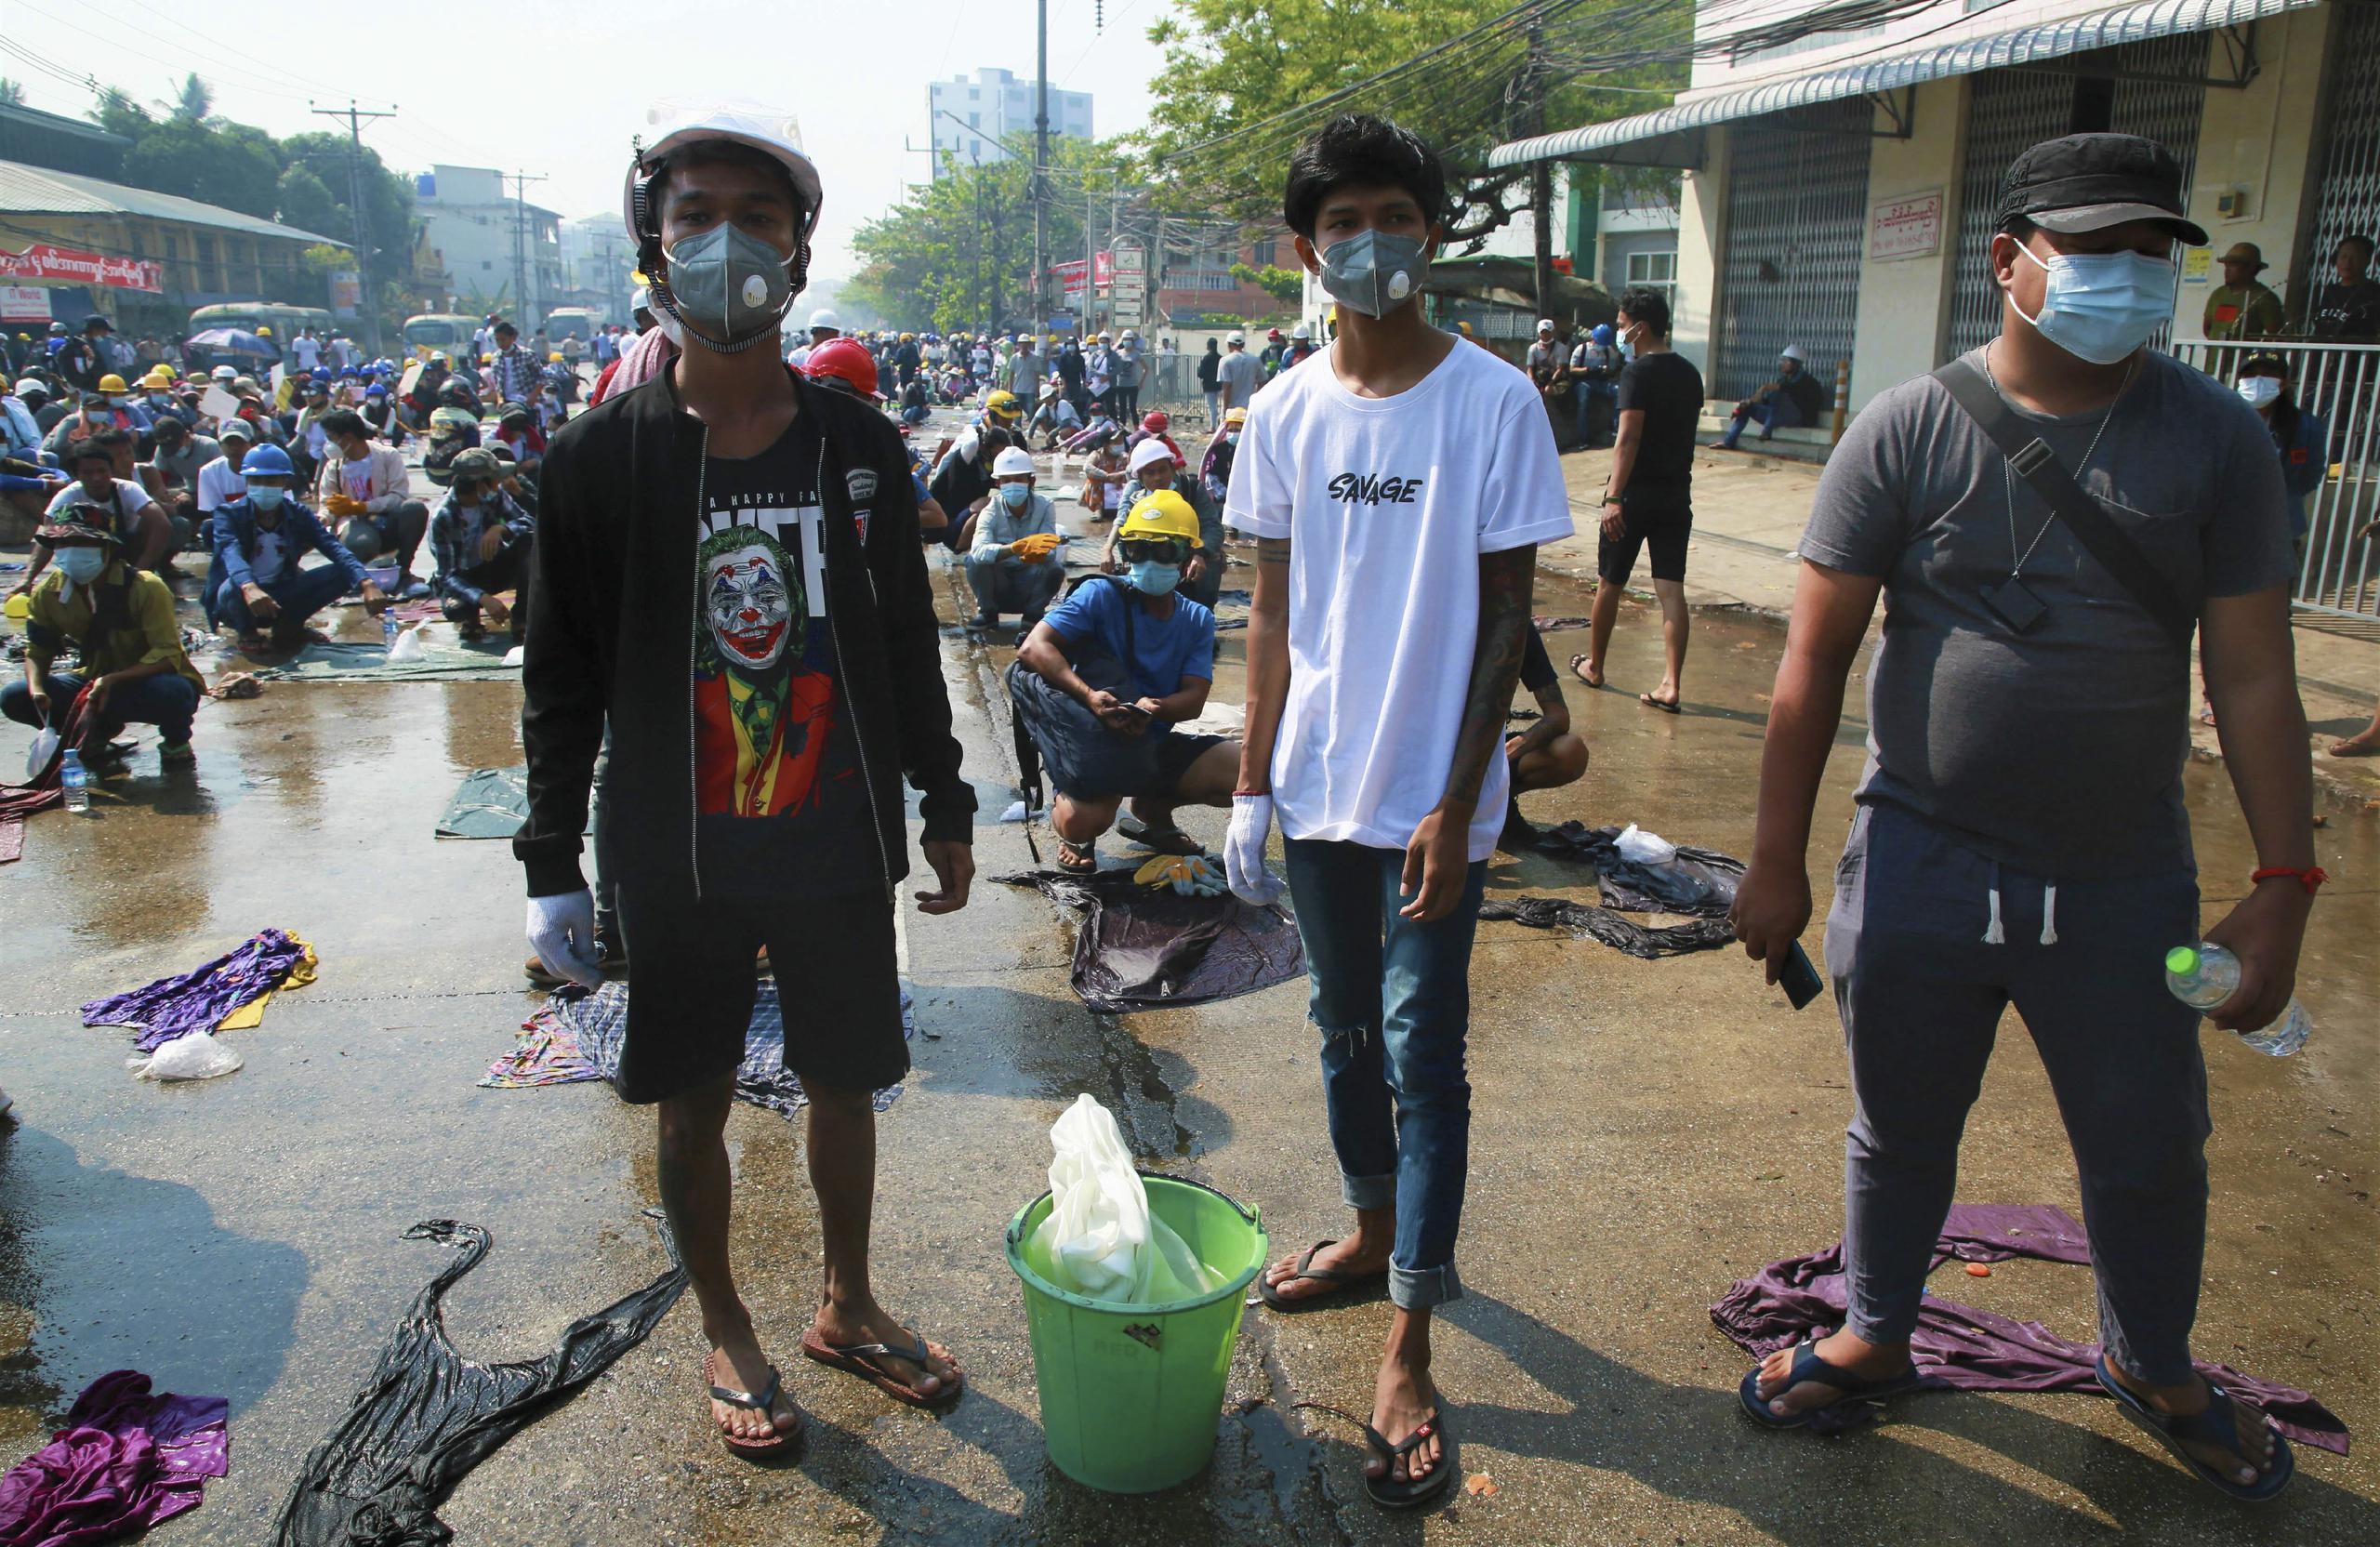 Los manifestantes se alistaban el sábado con agua y ropa mojada para extinguir las latas de gases lacrimógenos en uno de los enfrentamientos contra las fuerzas de la junta militar.